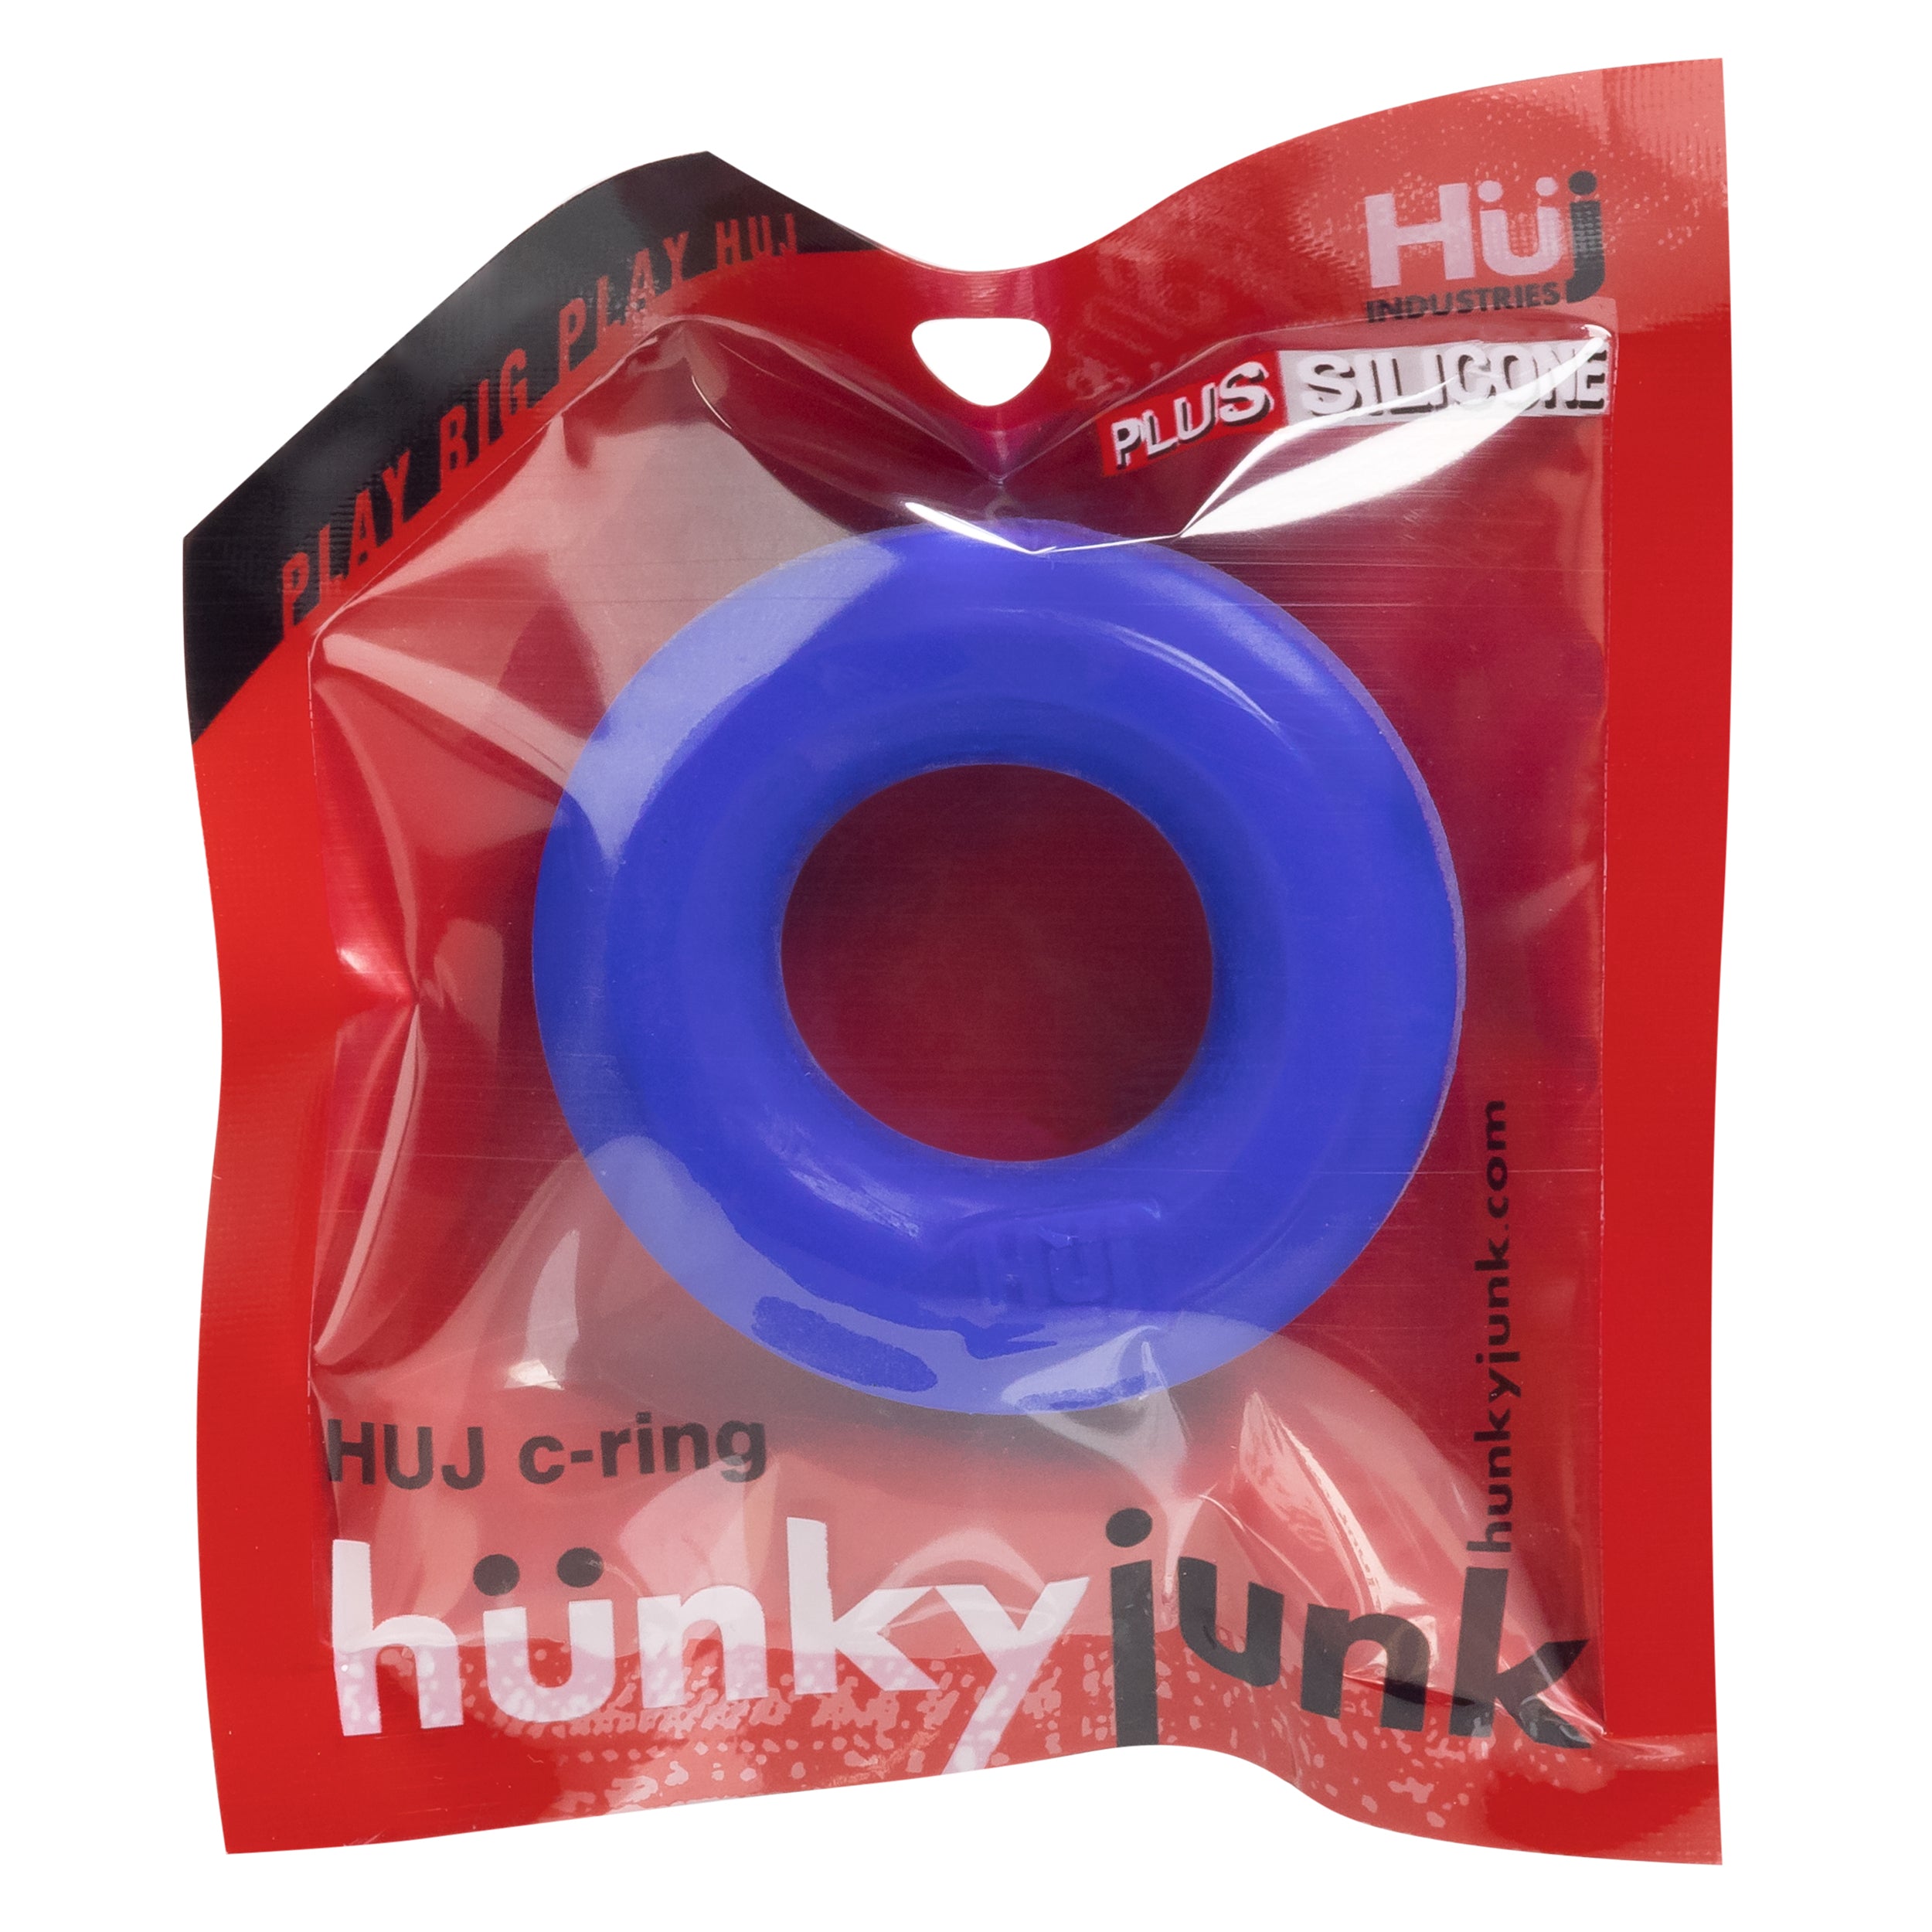 HUJ C-RING by Hunkyjunk Cobalt